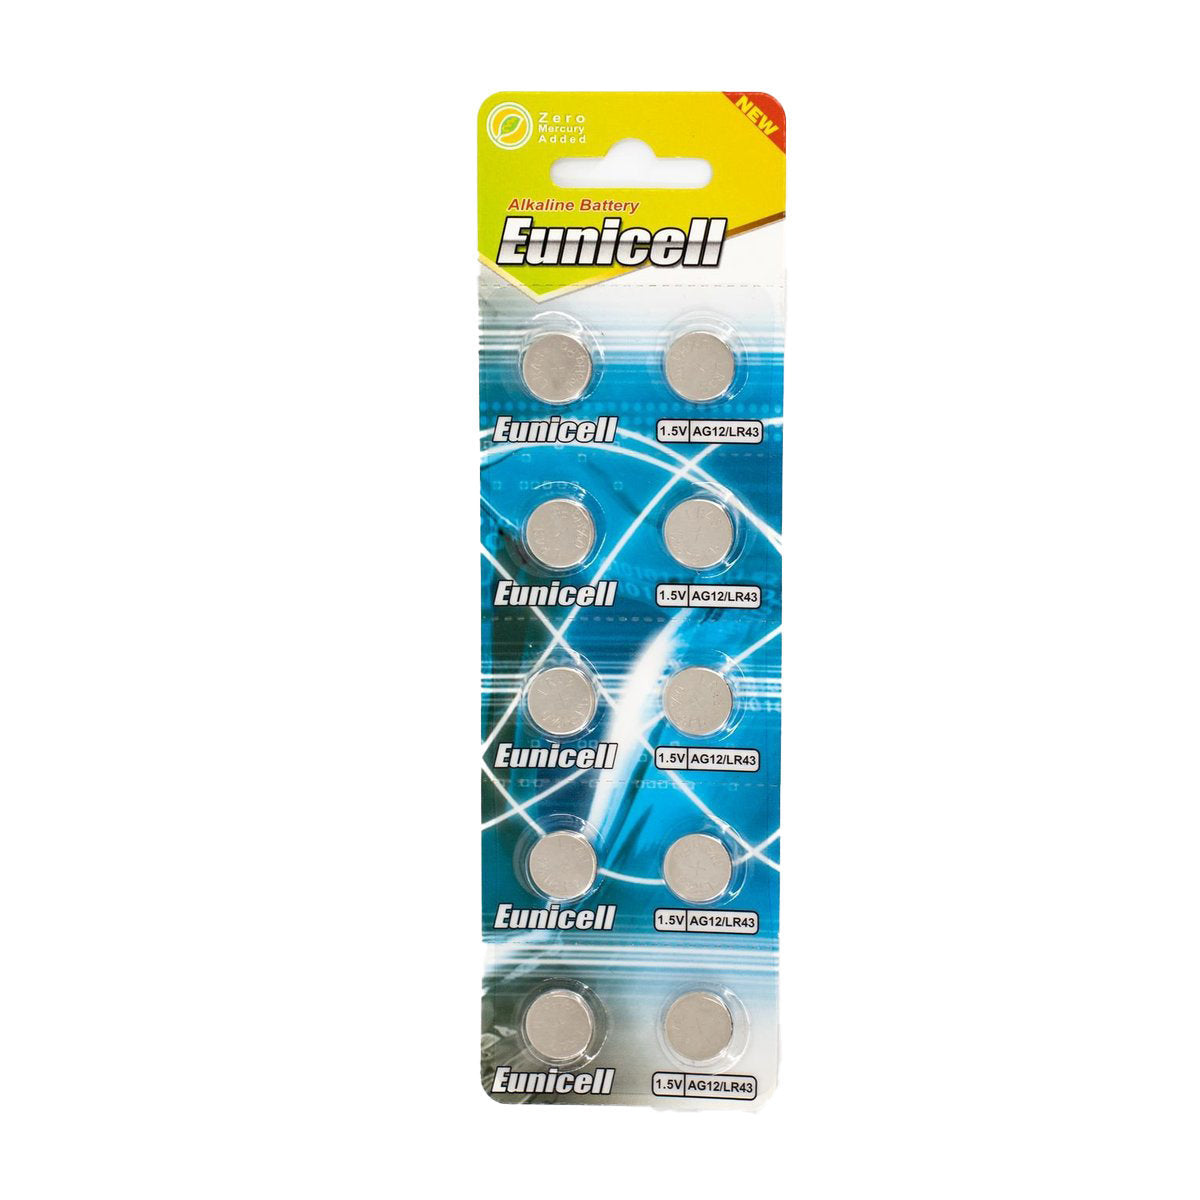 Eunicell 1.5V Ag12 Lr43 Alkaline Button Cell Battery - 10 Pack